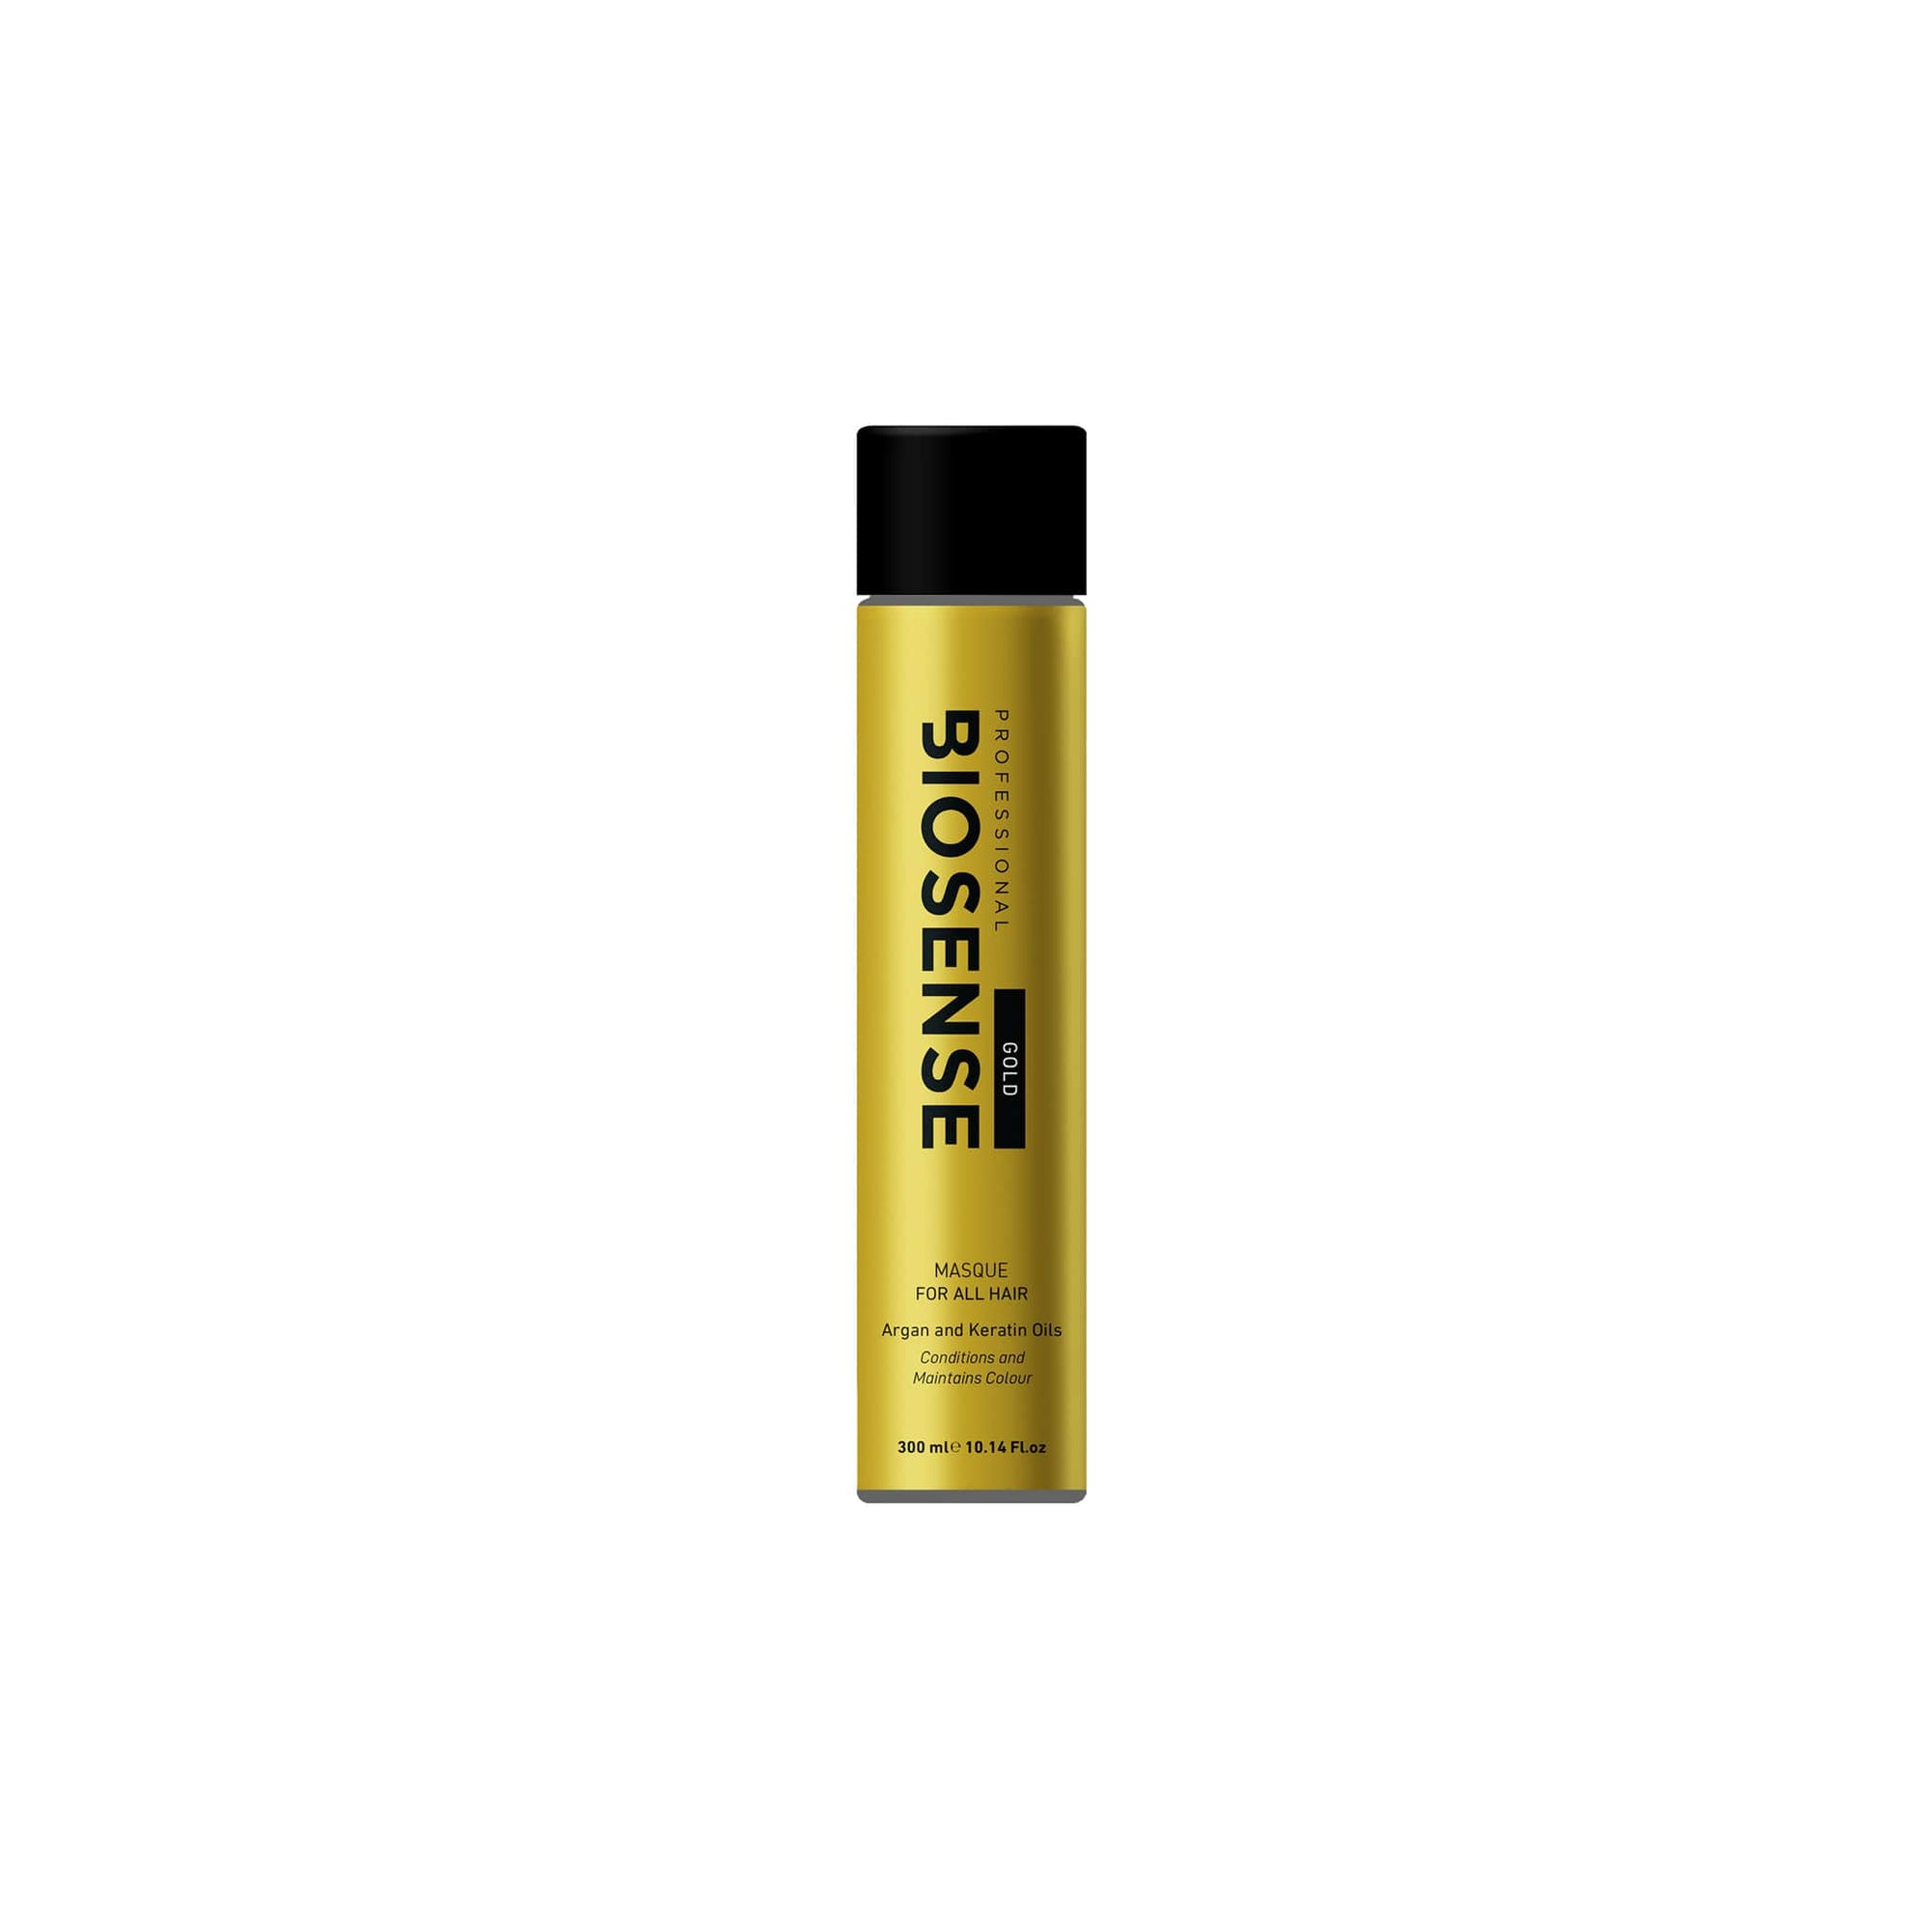 Biosense Gold Masque 300ml - Shop Online | Retail Box